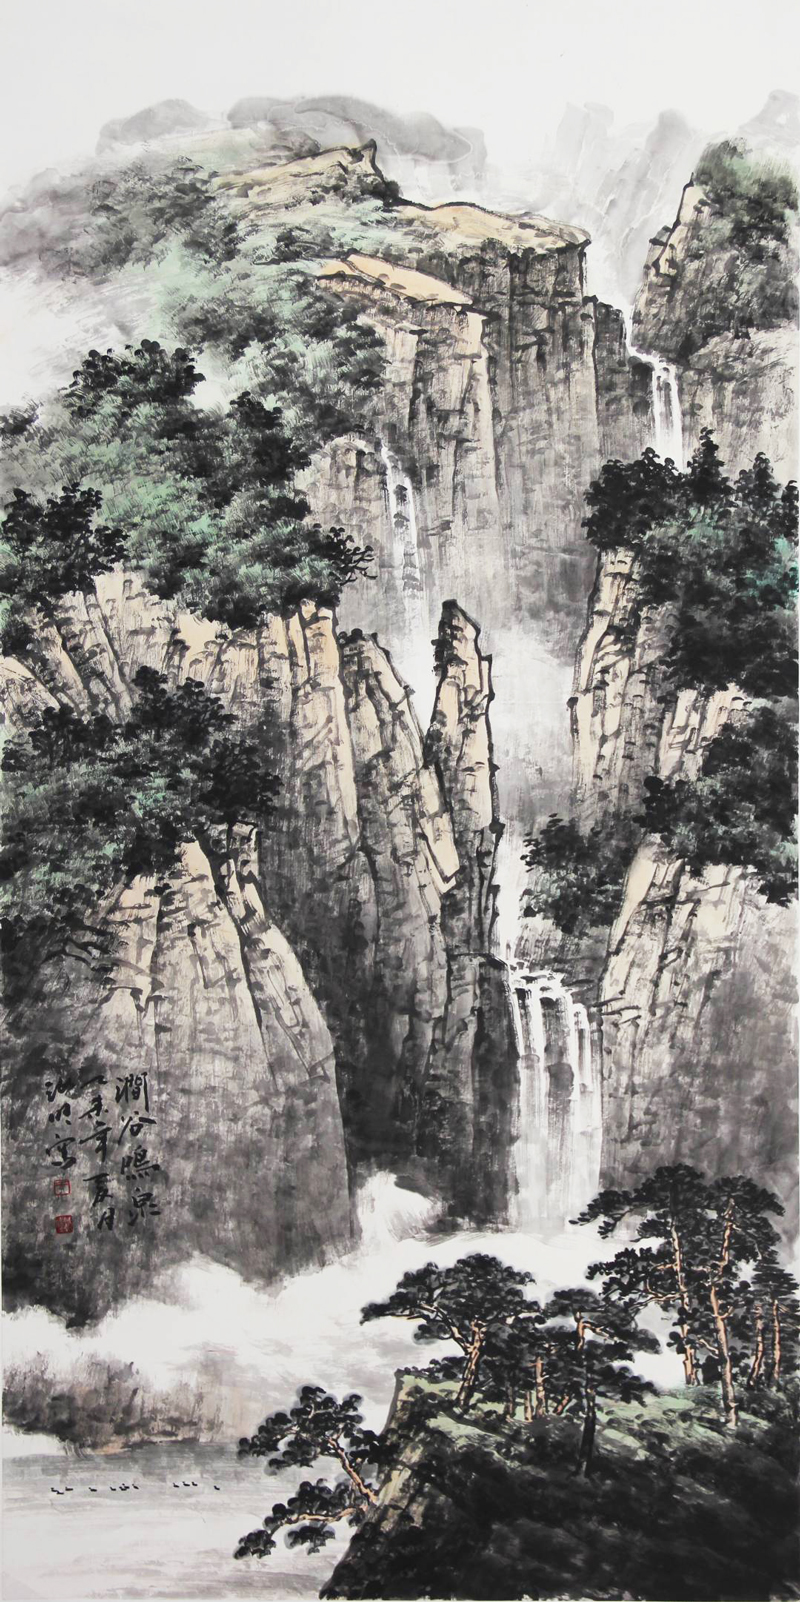 苍润相济气象万千画家于汝旺的山水画创作